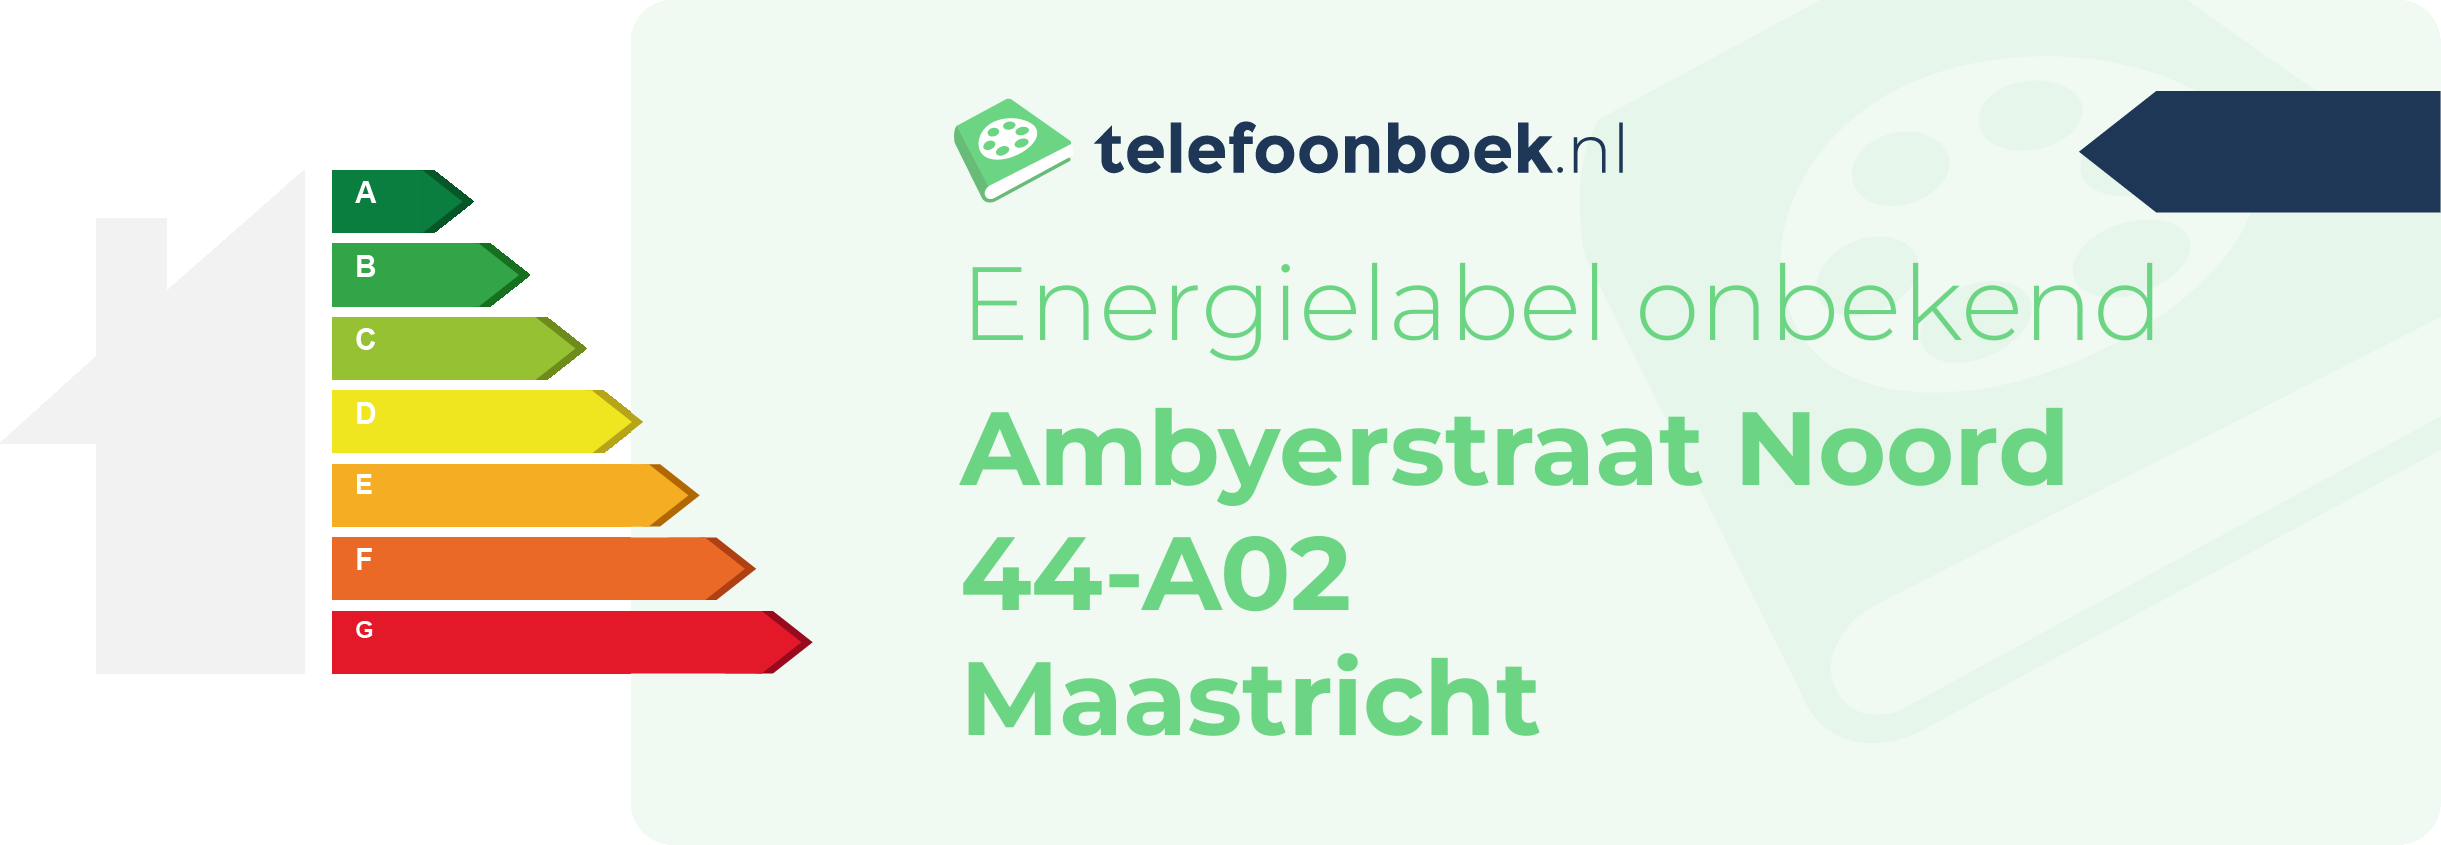 Energielabel Ambyerstraat Noord 44-A02 Maastricht